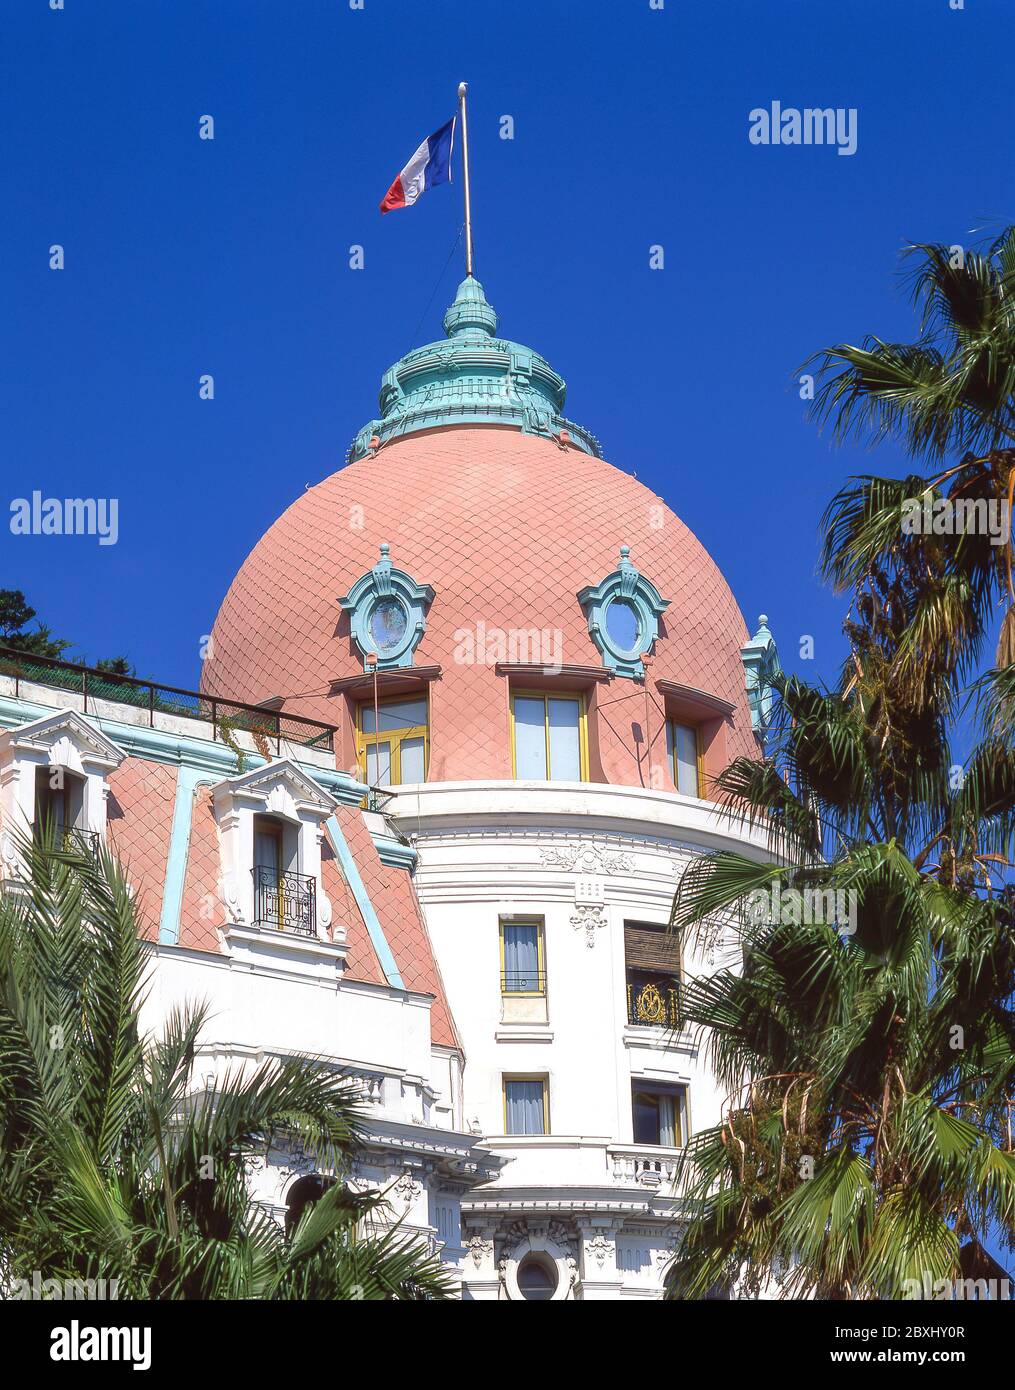 Le Hôtel Negresco, Promenade des Anglais, Nice, Côte d'Azur, Alpes-Maritimes, Provence-Alpes-Côte d'Azur, France Banque D'Images